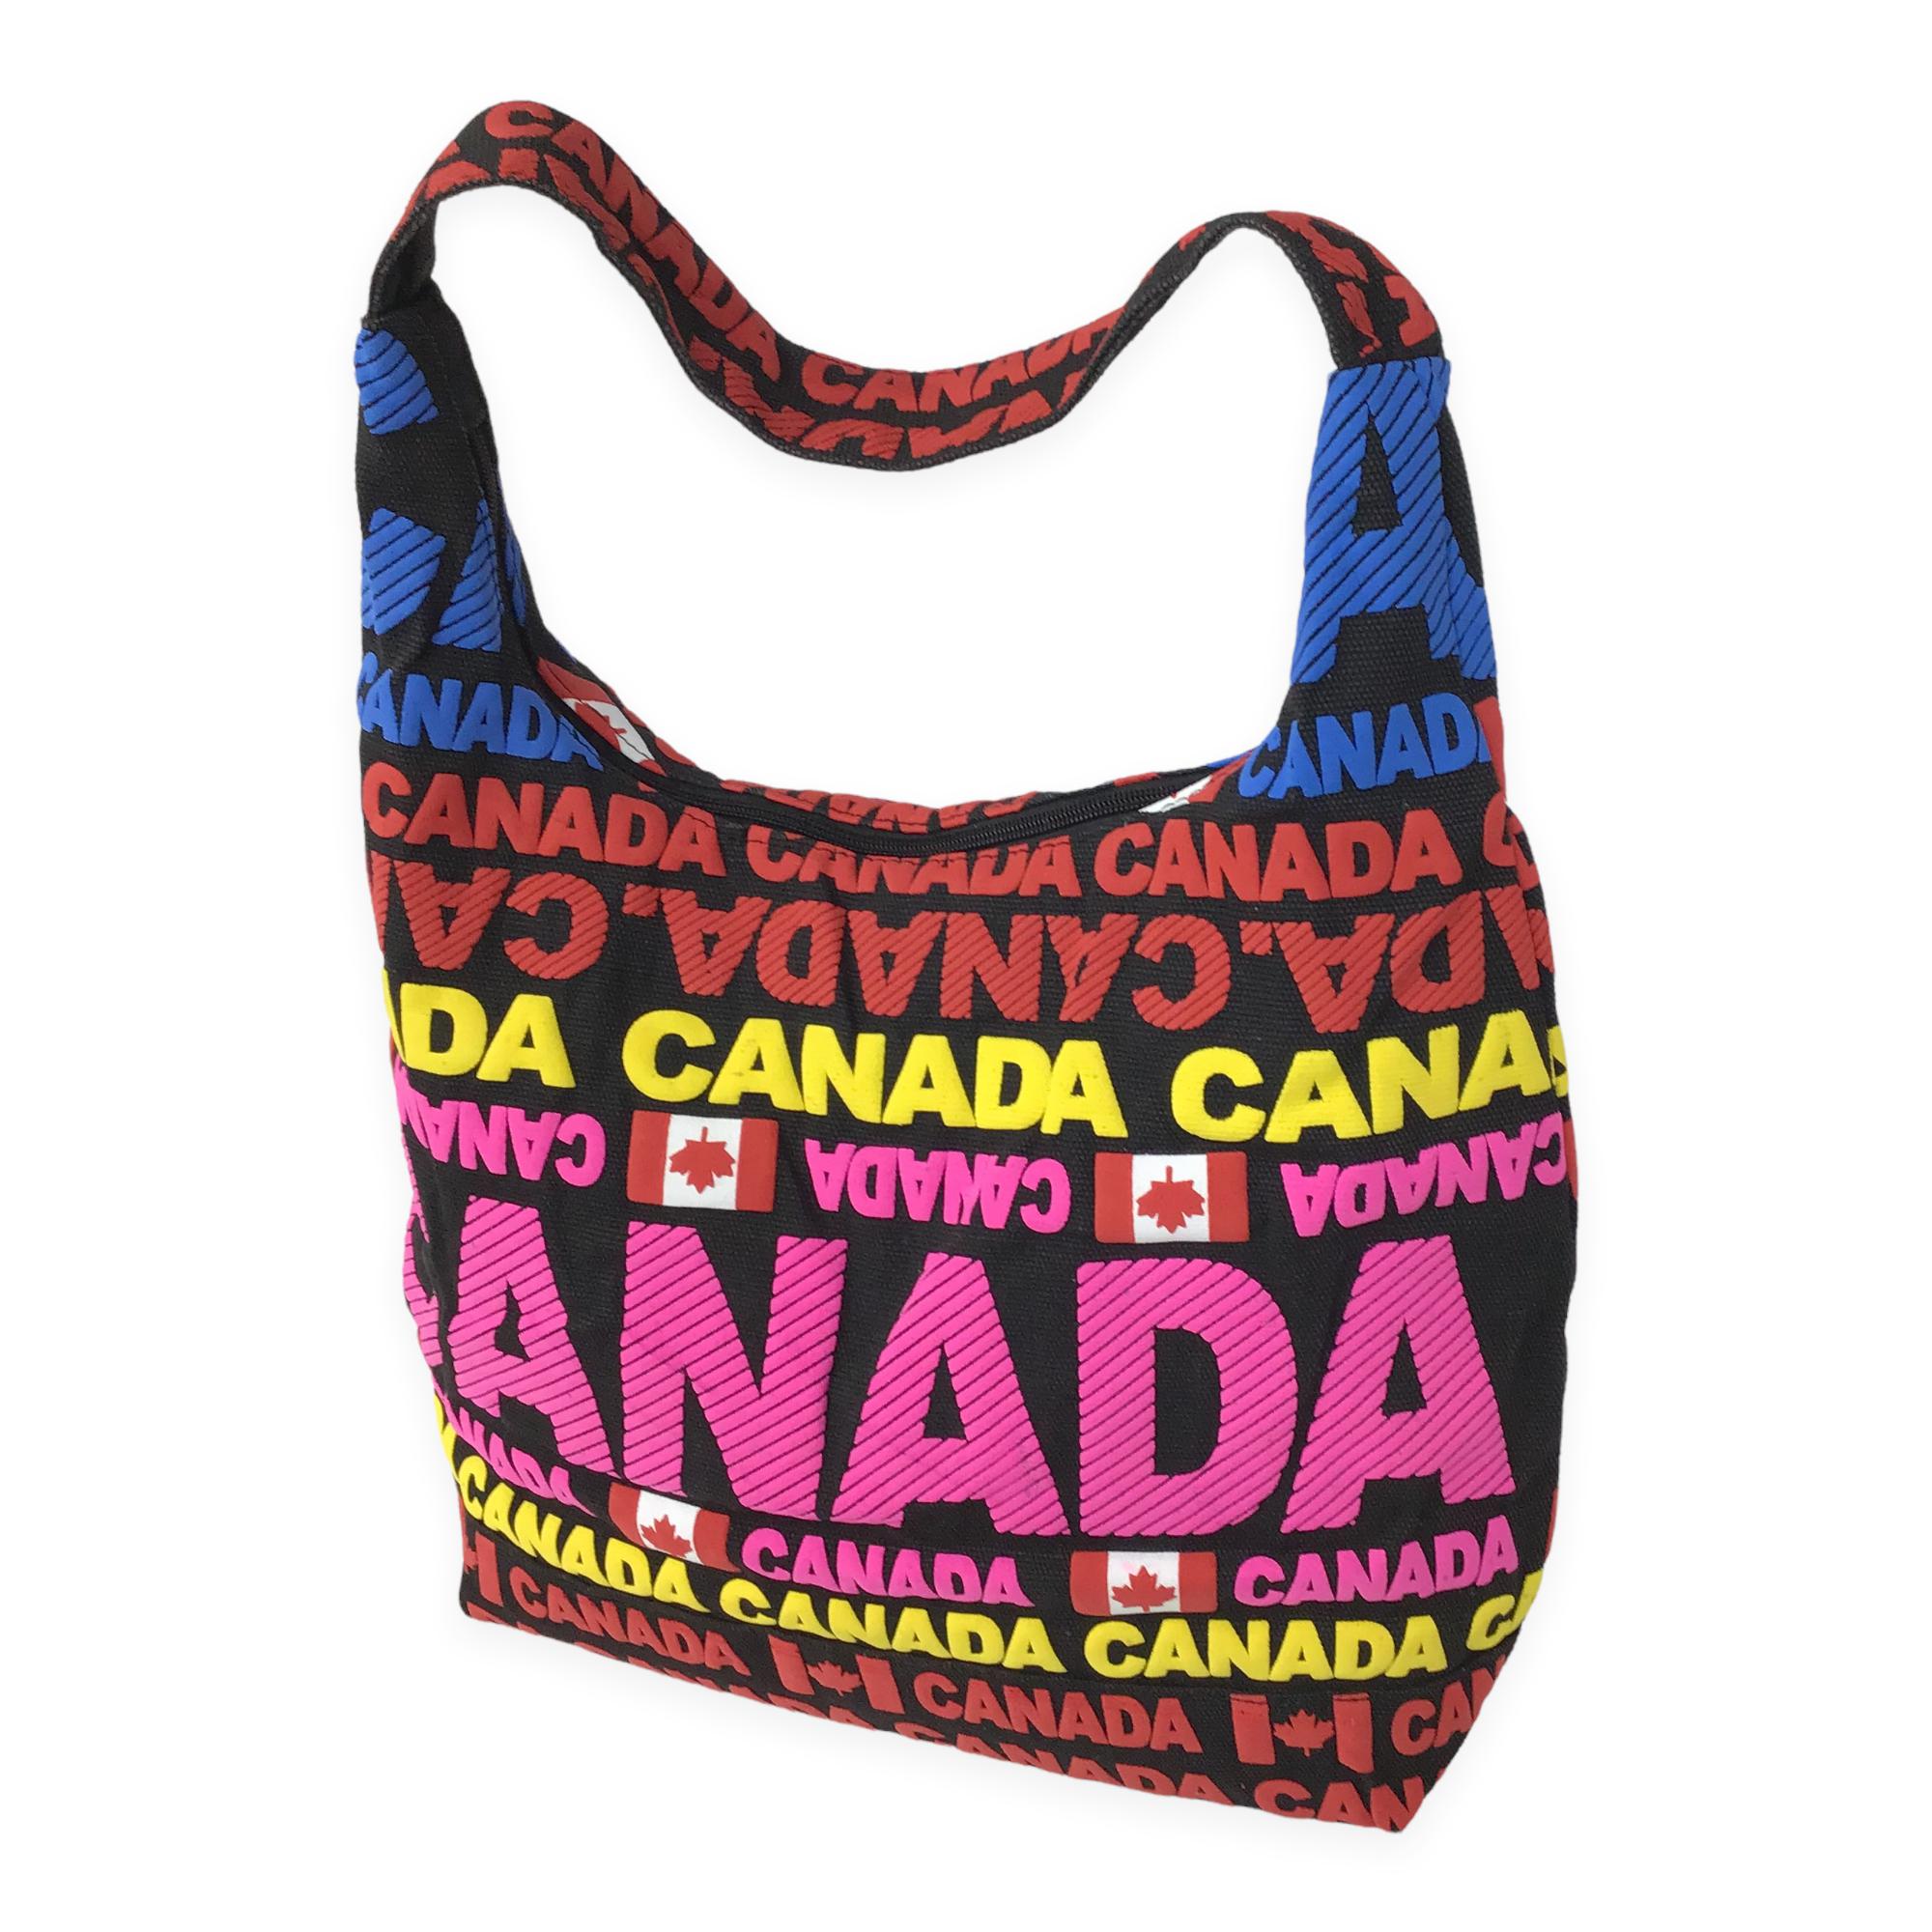 Canada Travel Tote Shoulder Bag | Tote Bag with Zipper and Shoulder Strap | Large Size Grocery Shopping Bag | Girls Shoulder Bag, Beach Bag, Hand Bag